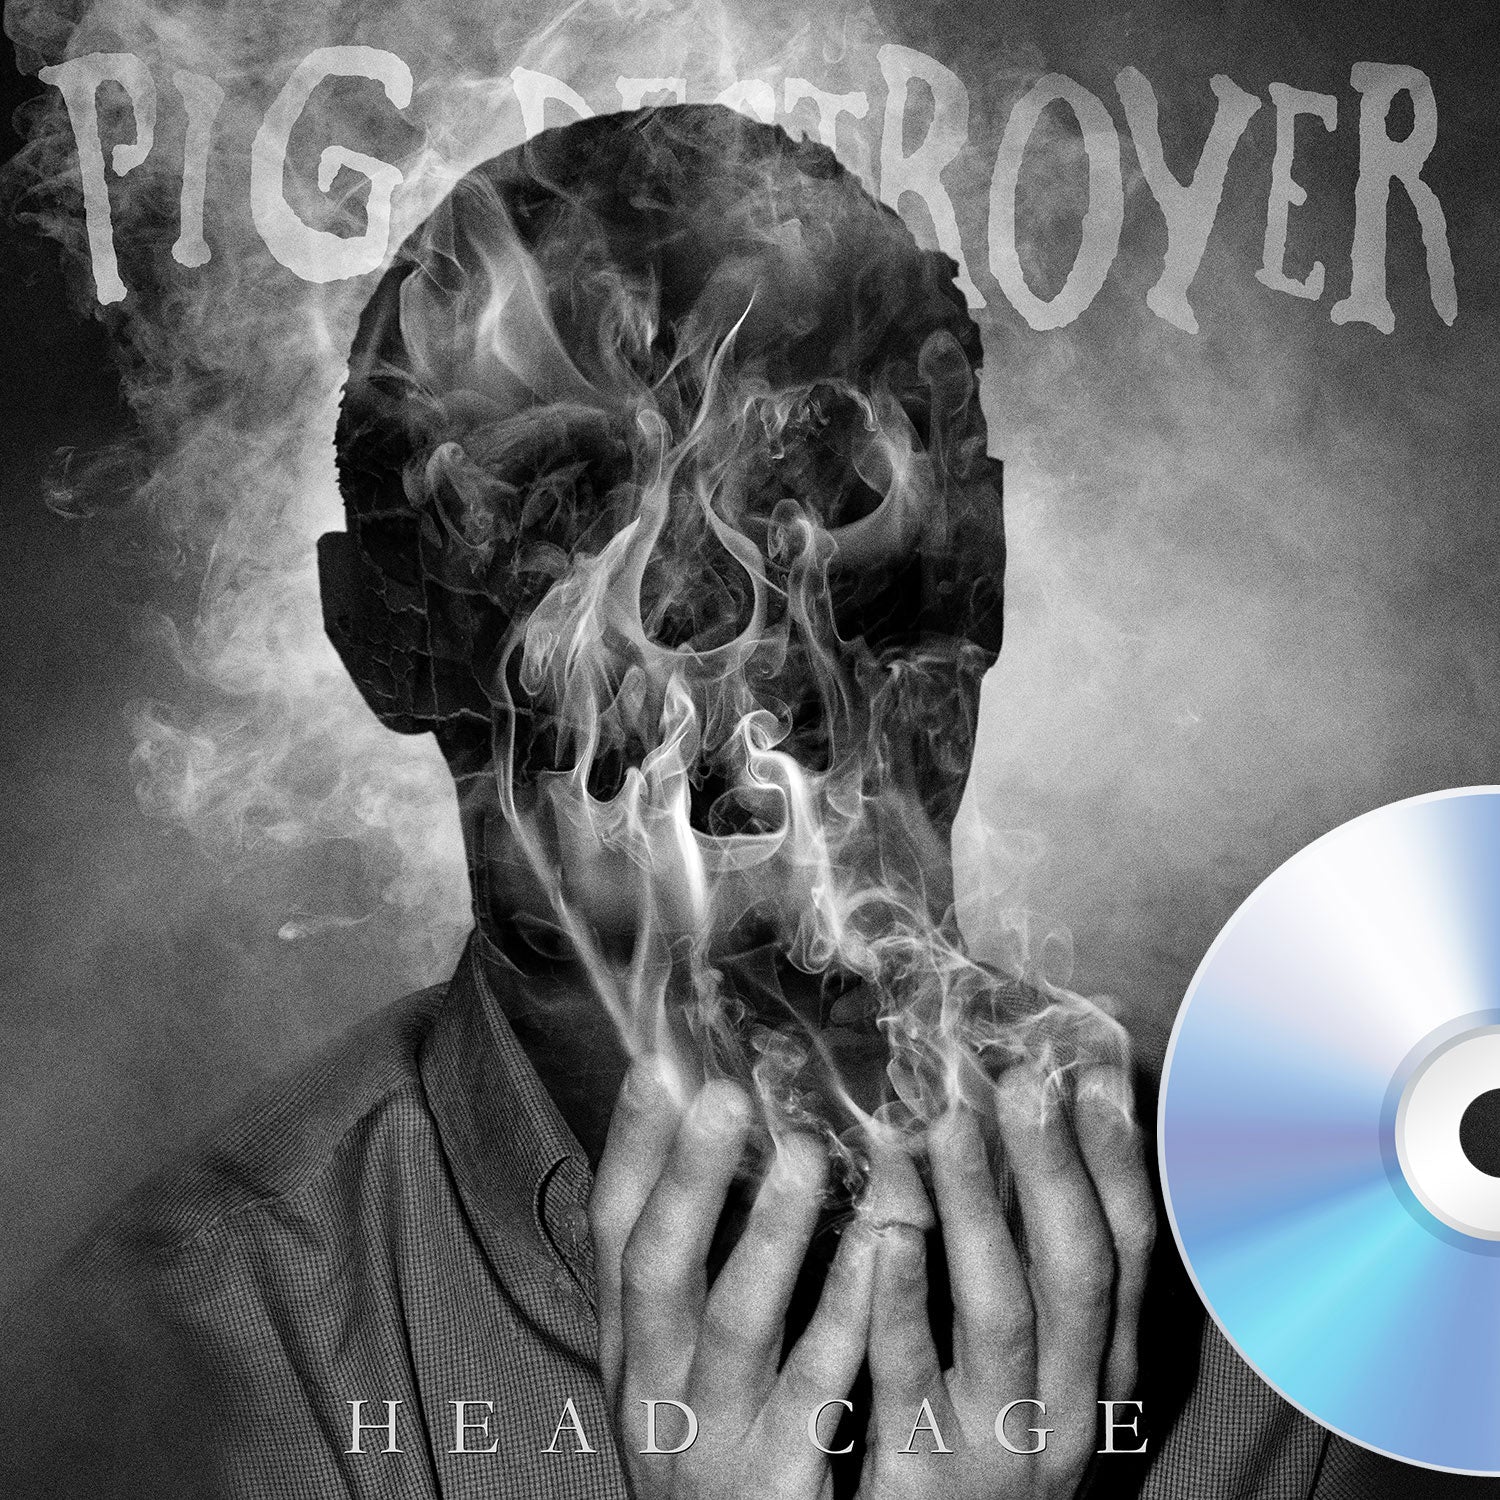 Pig Destroyer "Head Cage" CD